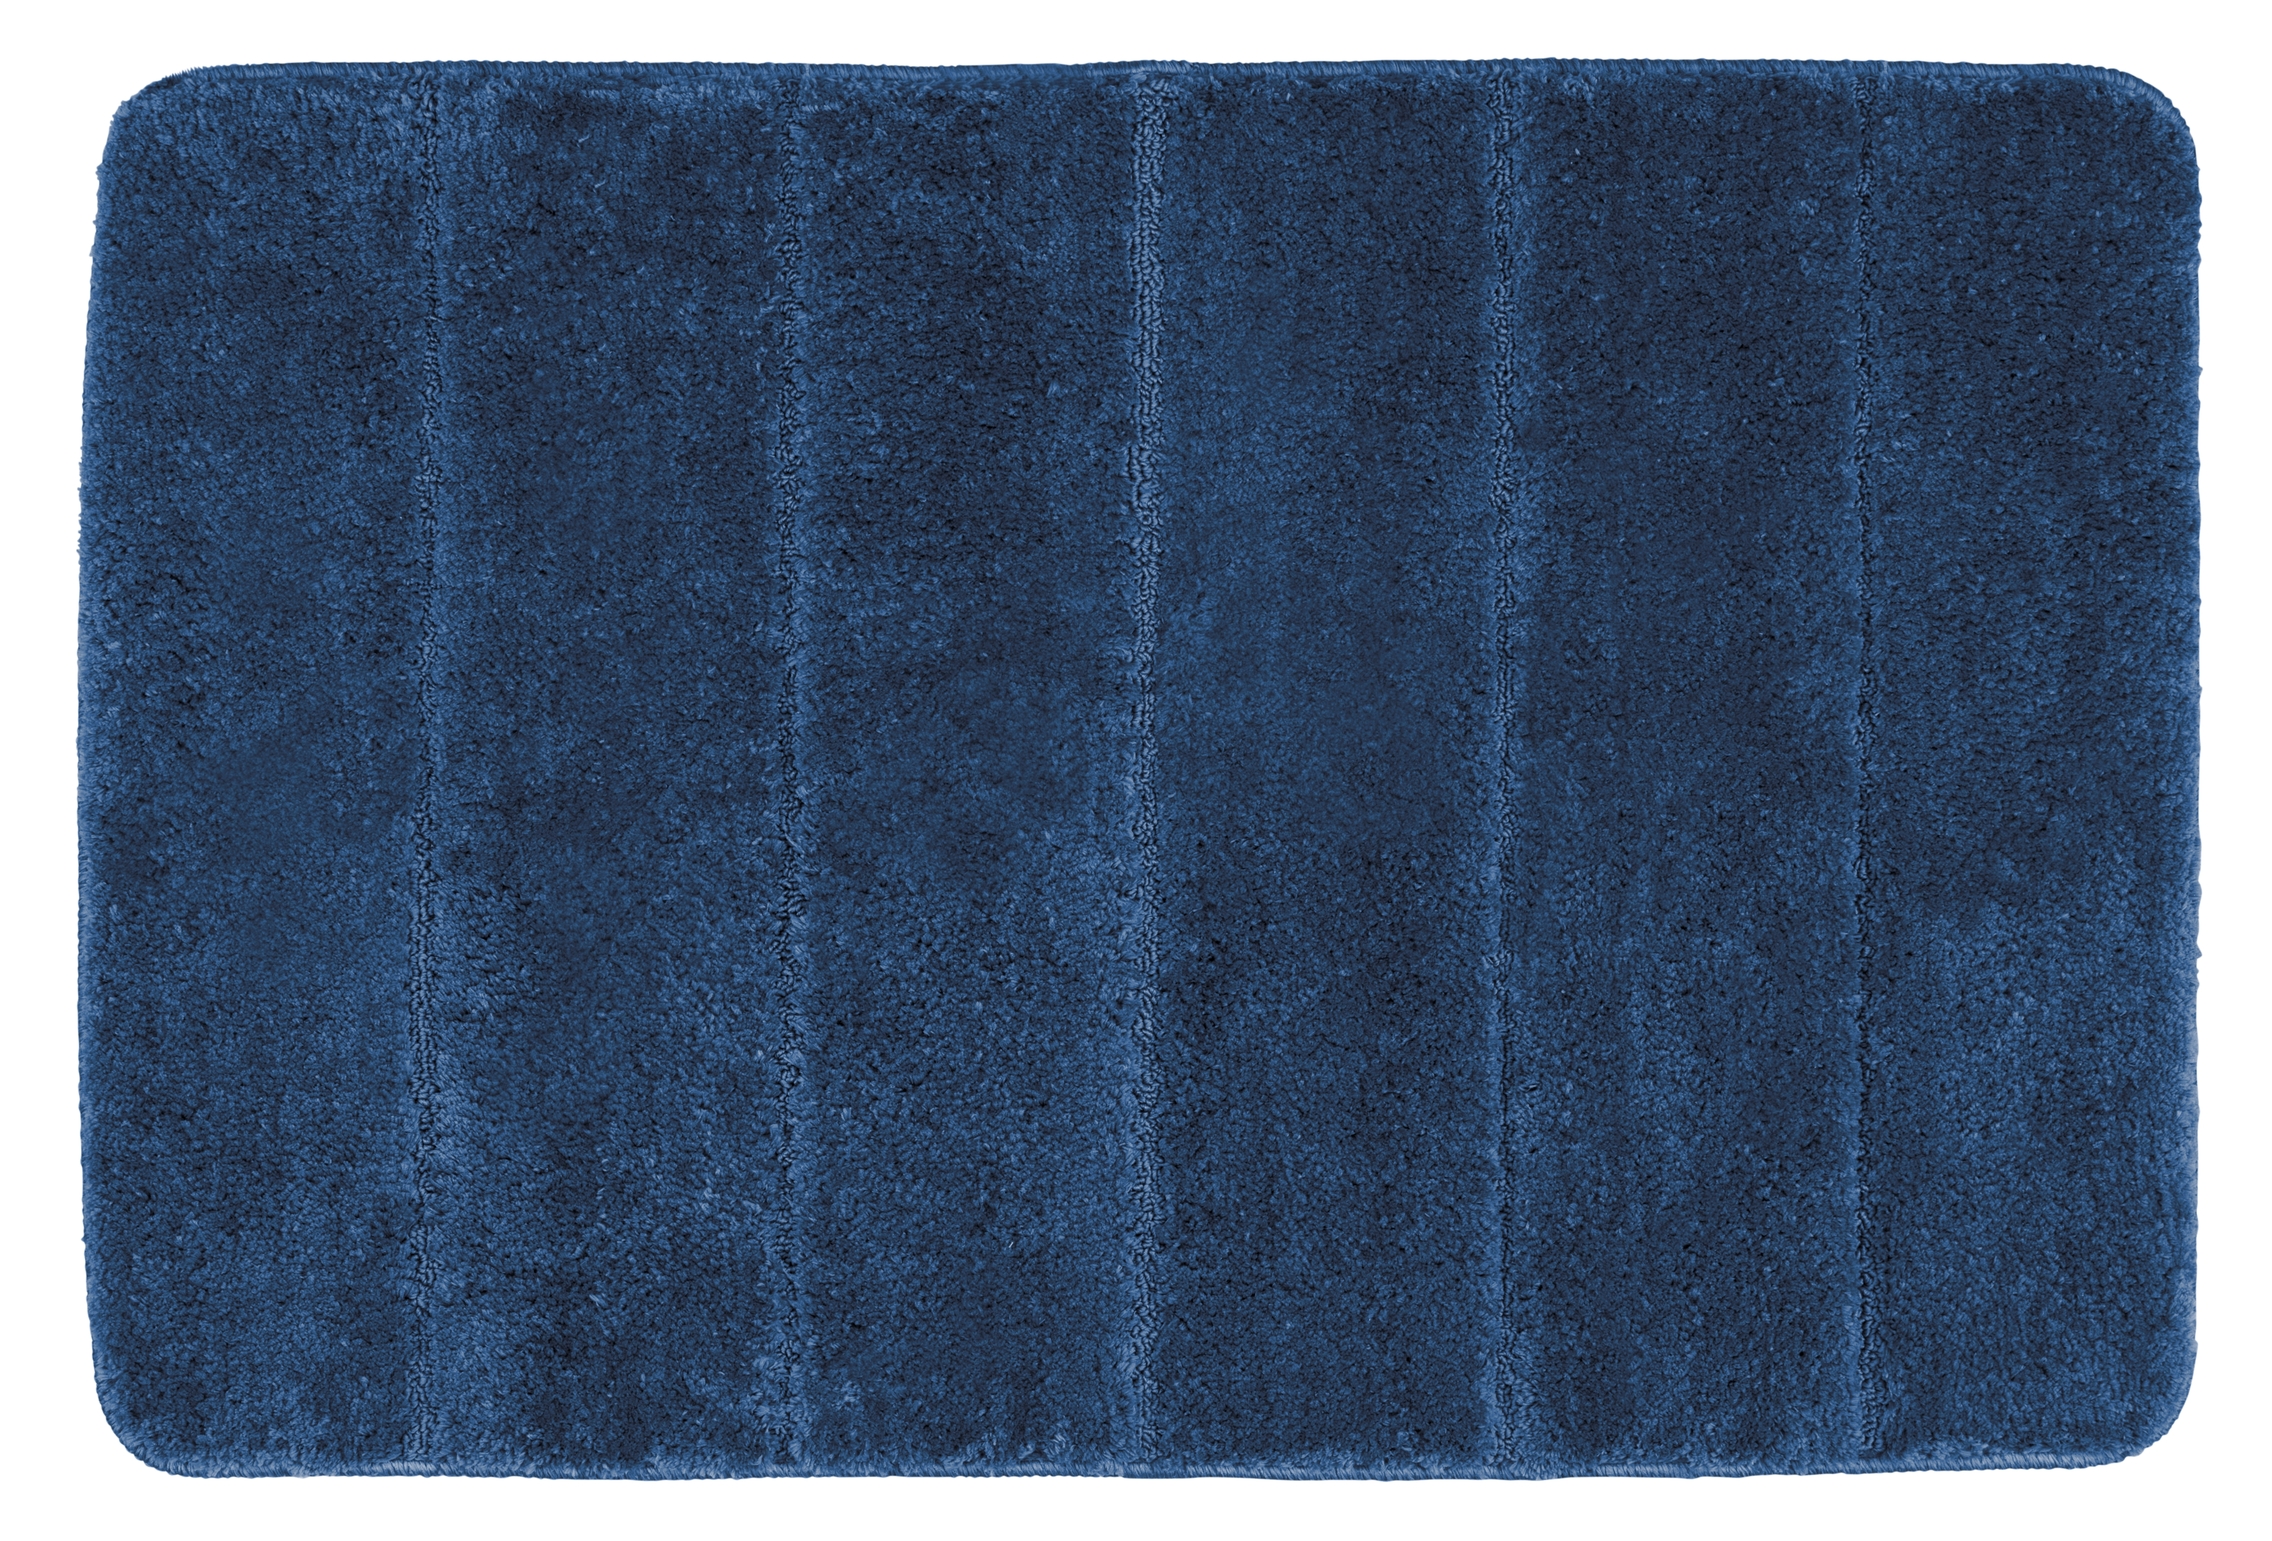 Wenko Steps Badematte 60 x 90 cm, marine blue